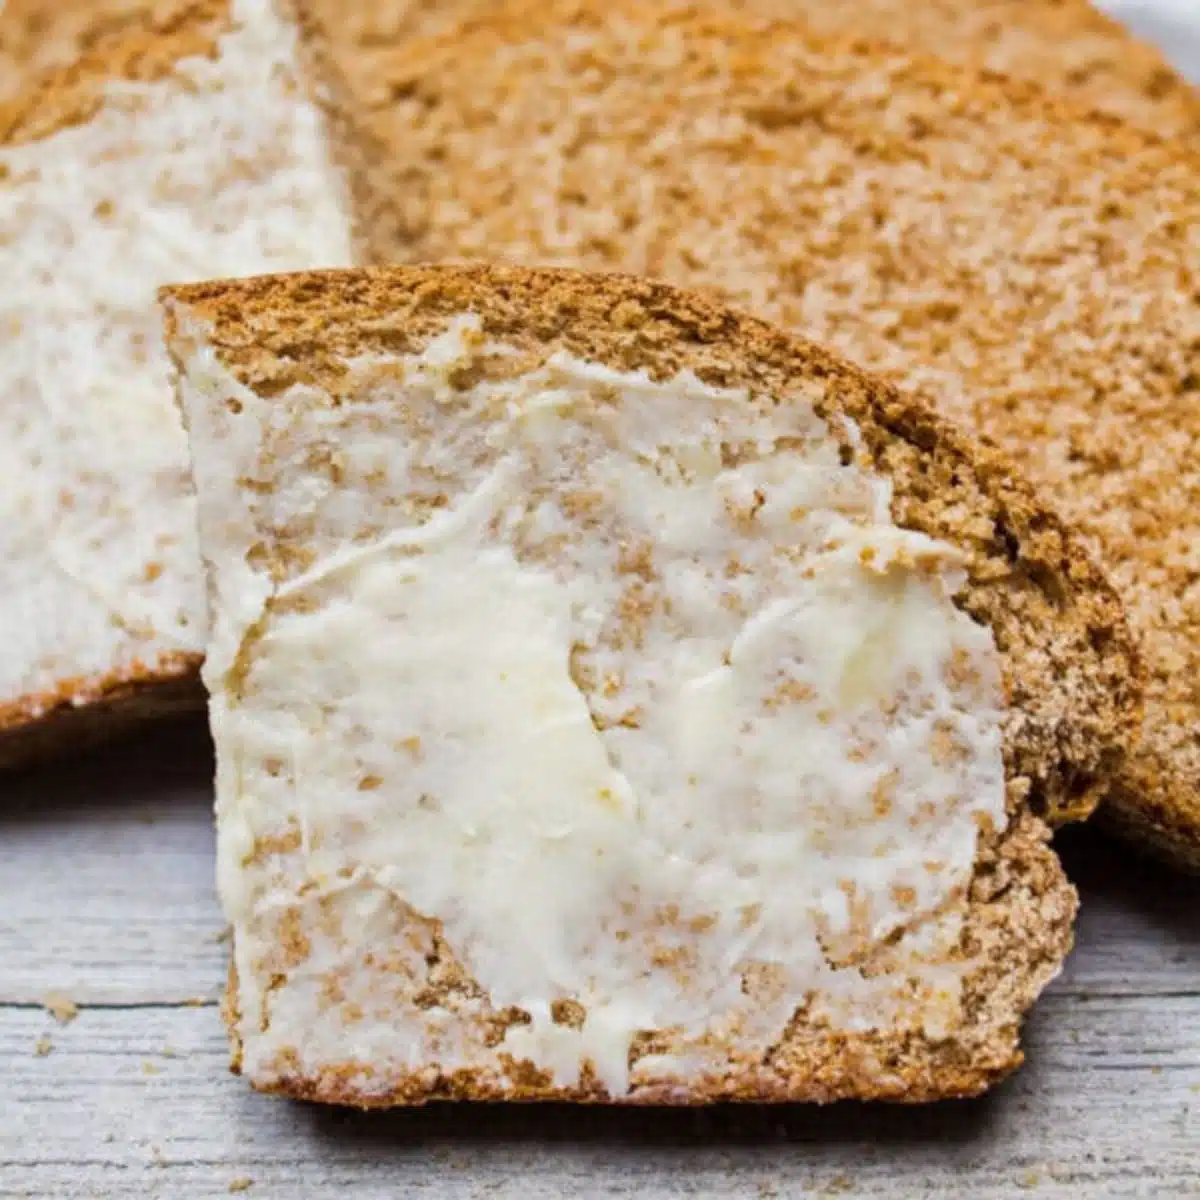 Vierkant beeld van gesneden volkorenbrood met boter.